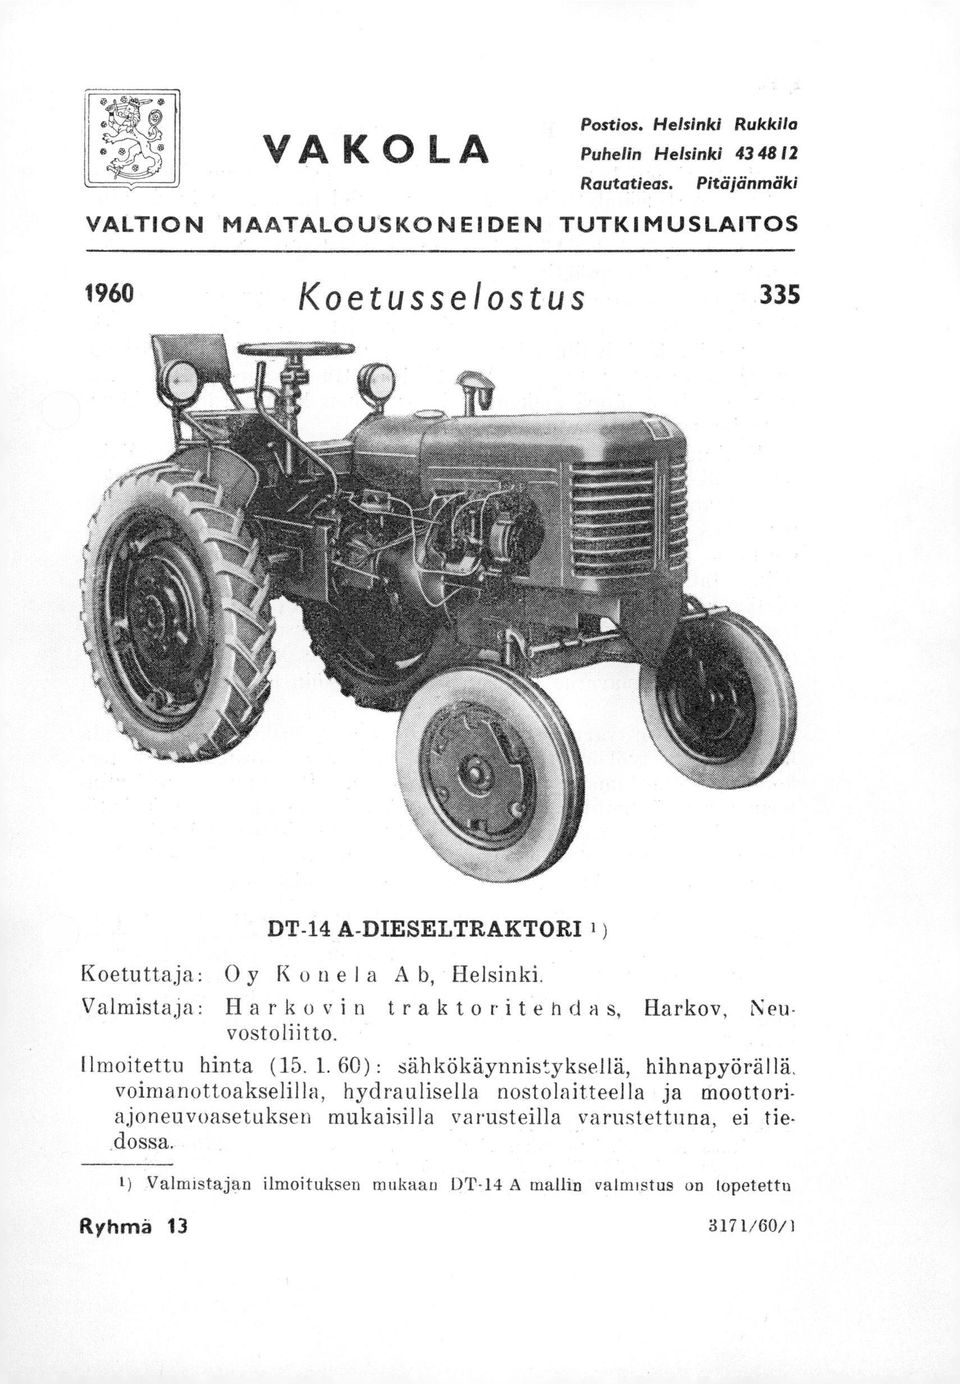 Valmistaja: Harkovin traktoritebda s, Harkov, Neu vostoliitto. Ilmoitettu hinta (15. 1.